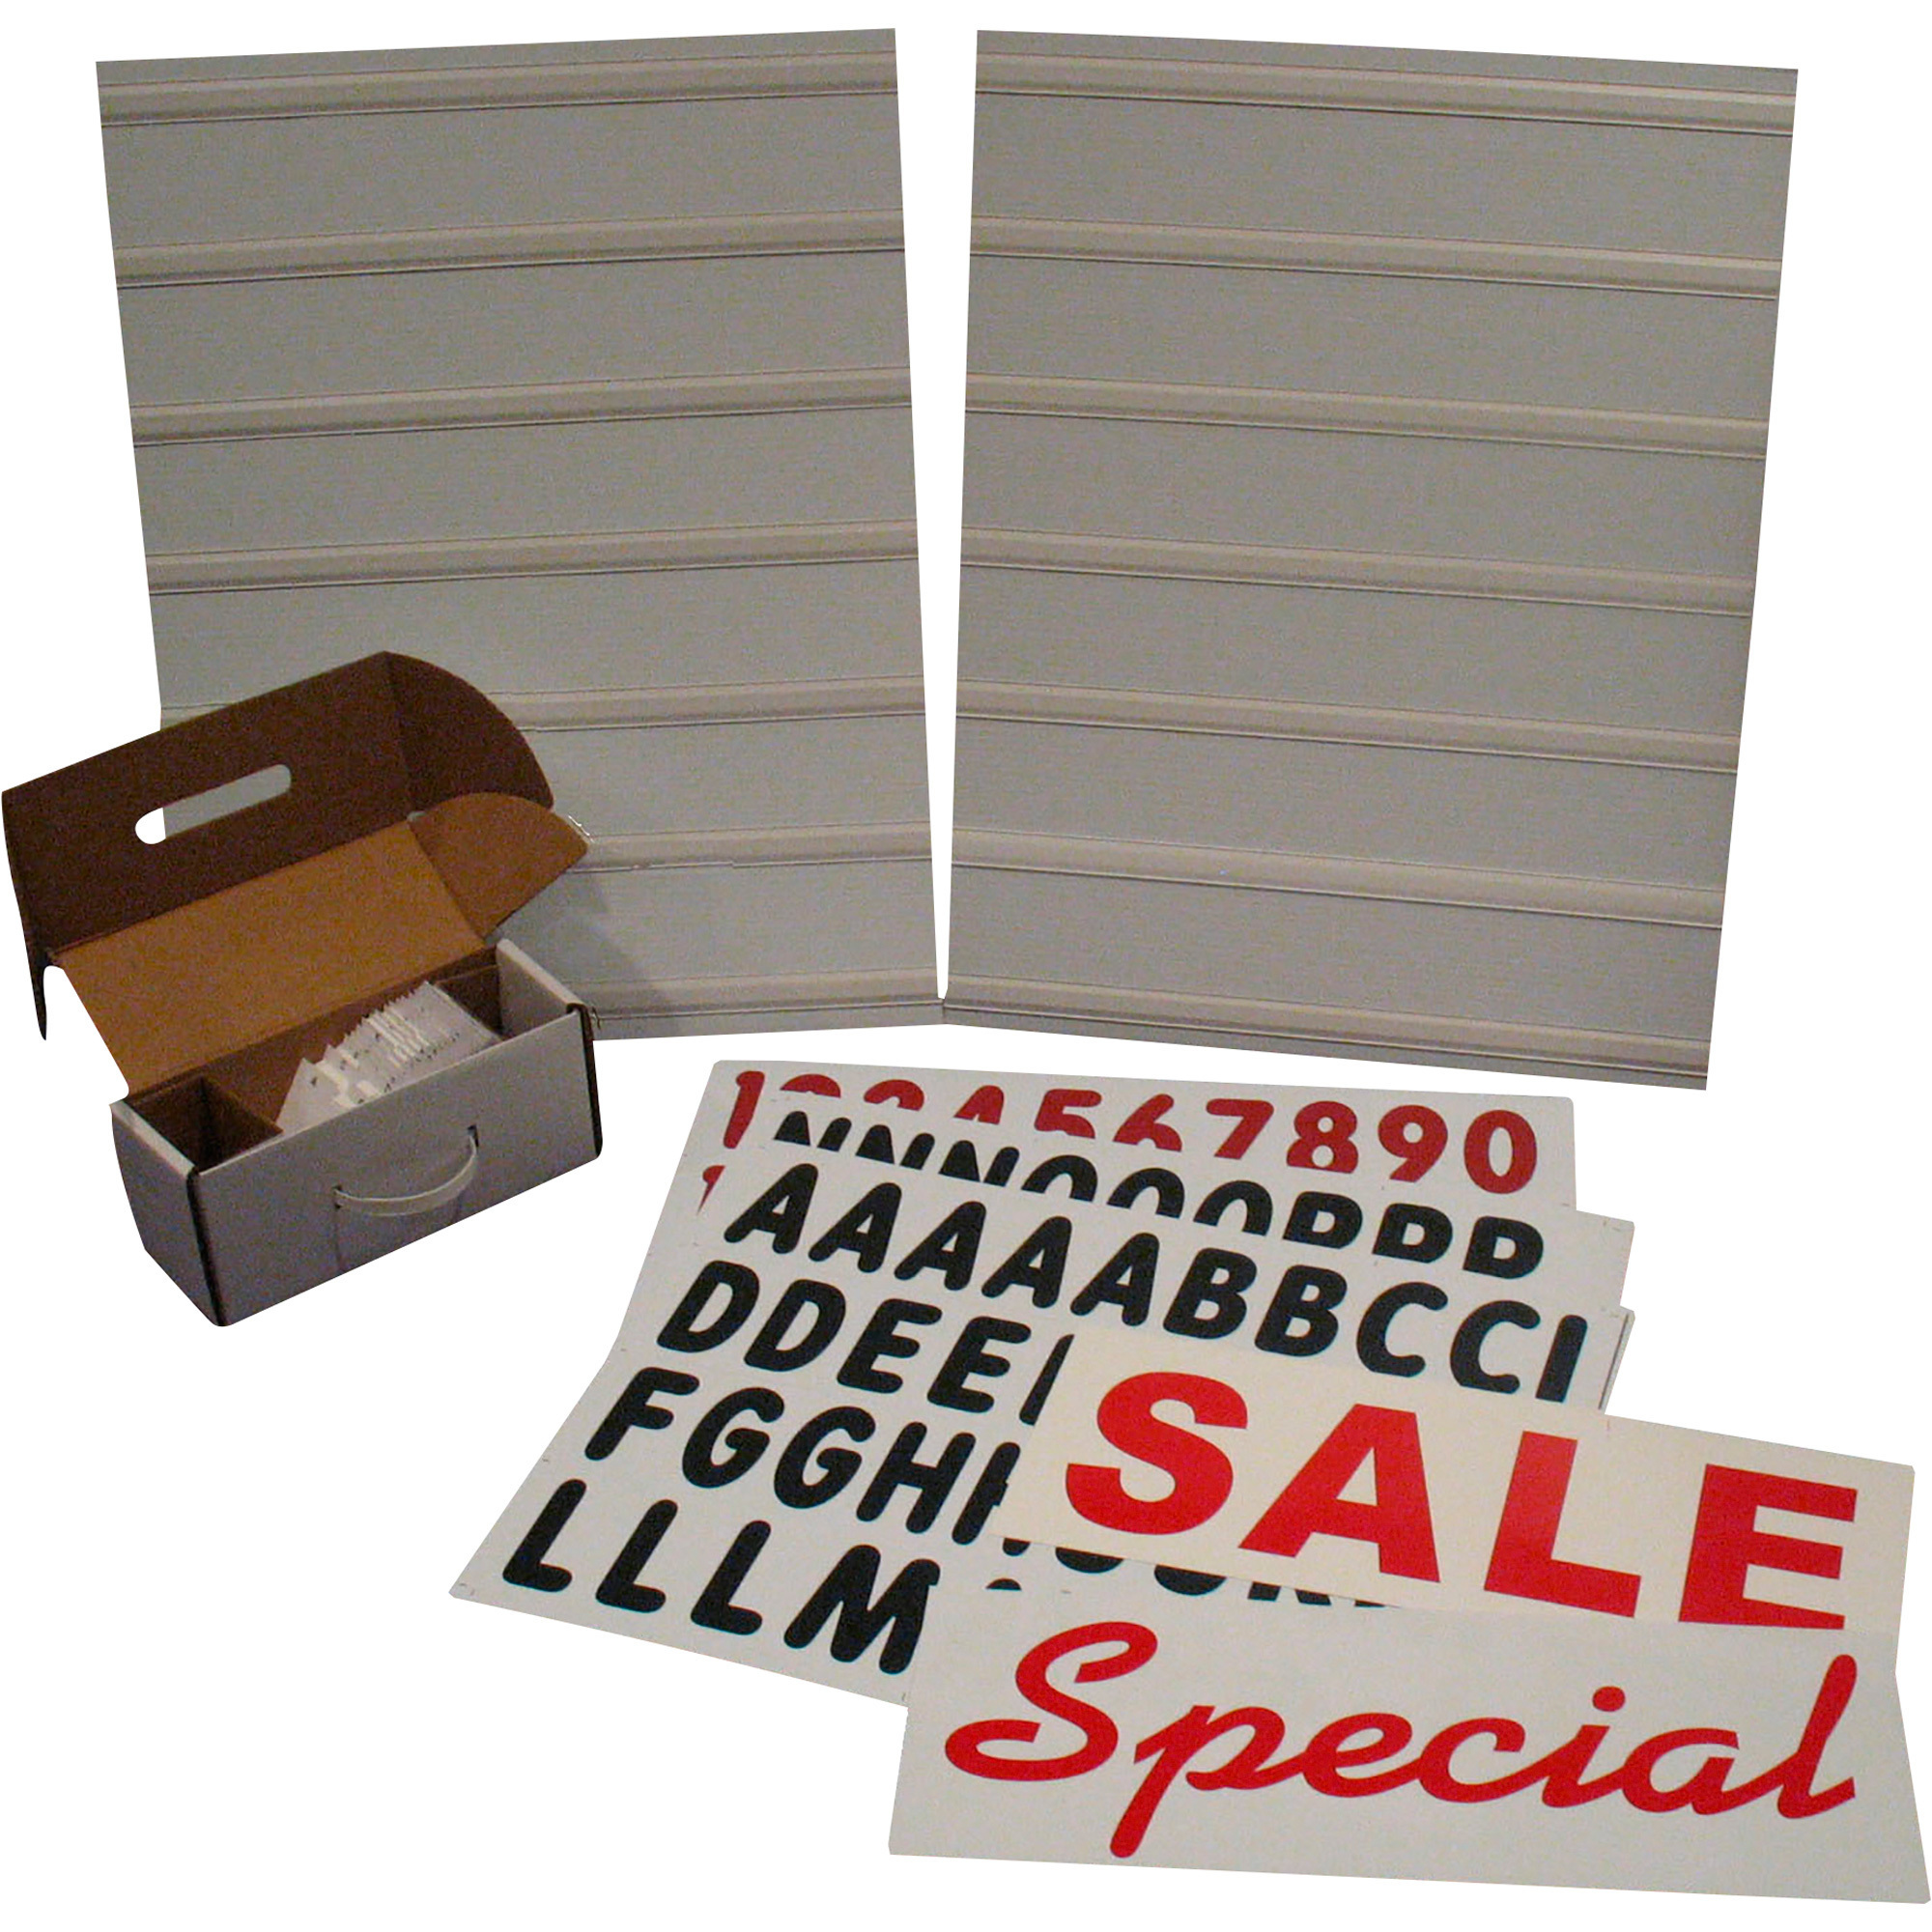 Plasticade Message Board for Signicade â White, 24Inch L x 36Inch H, Model 8410